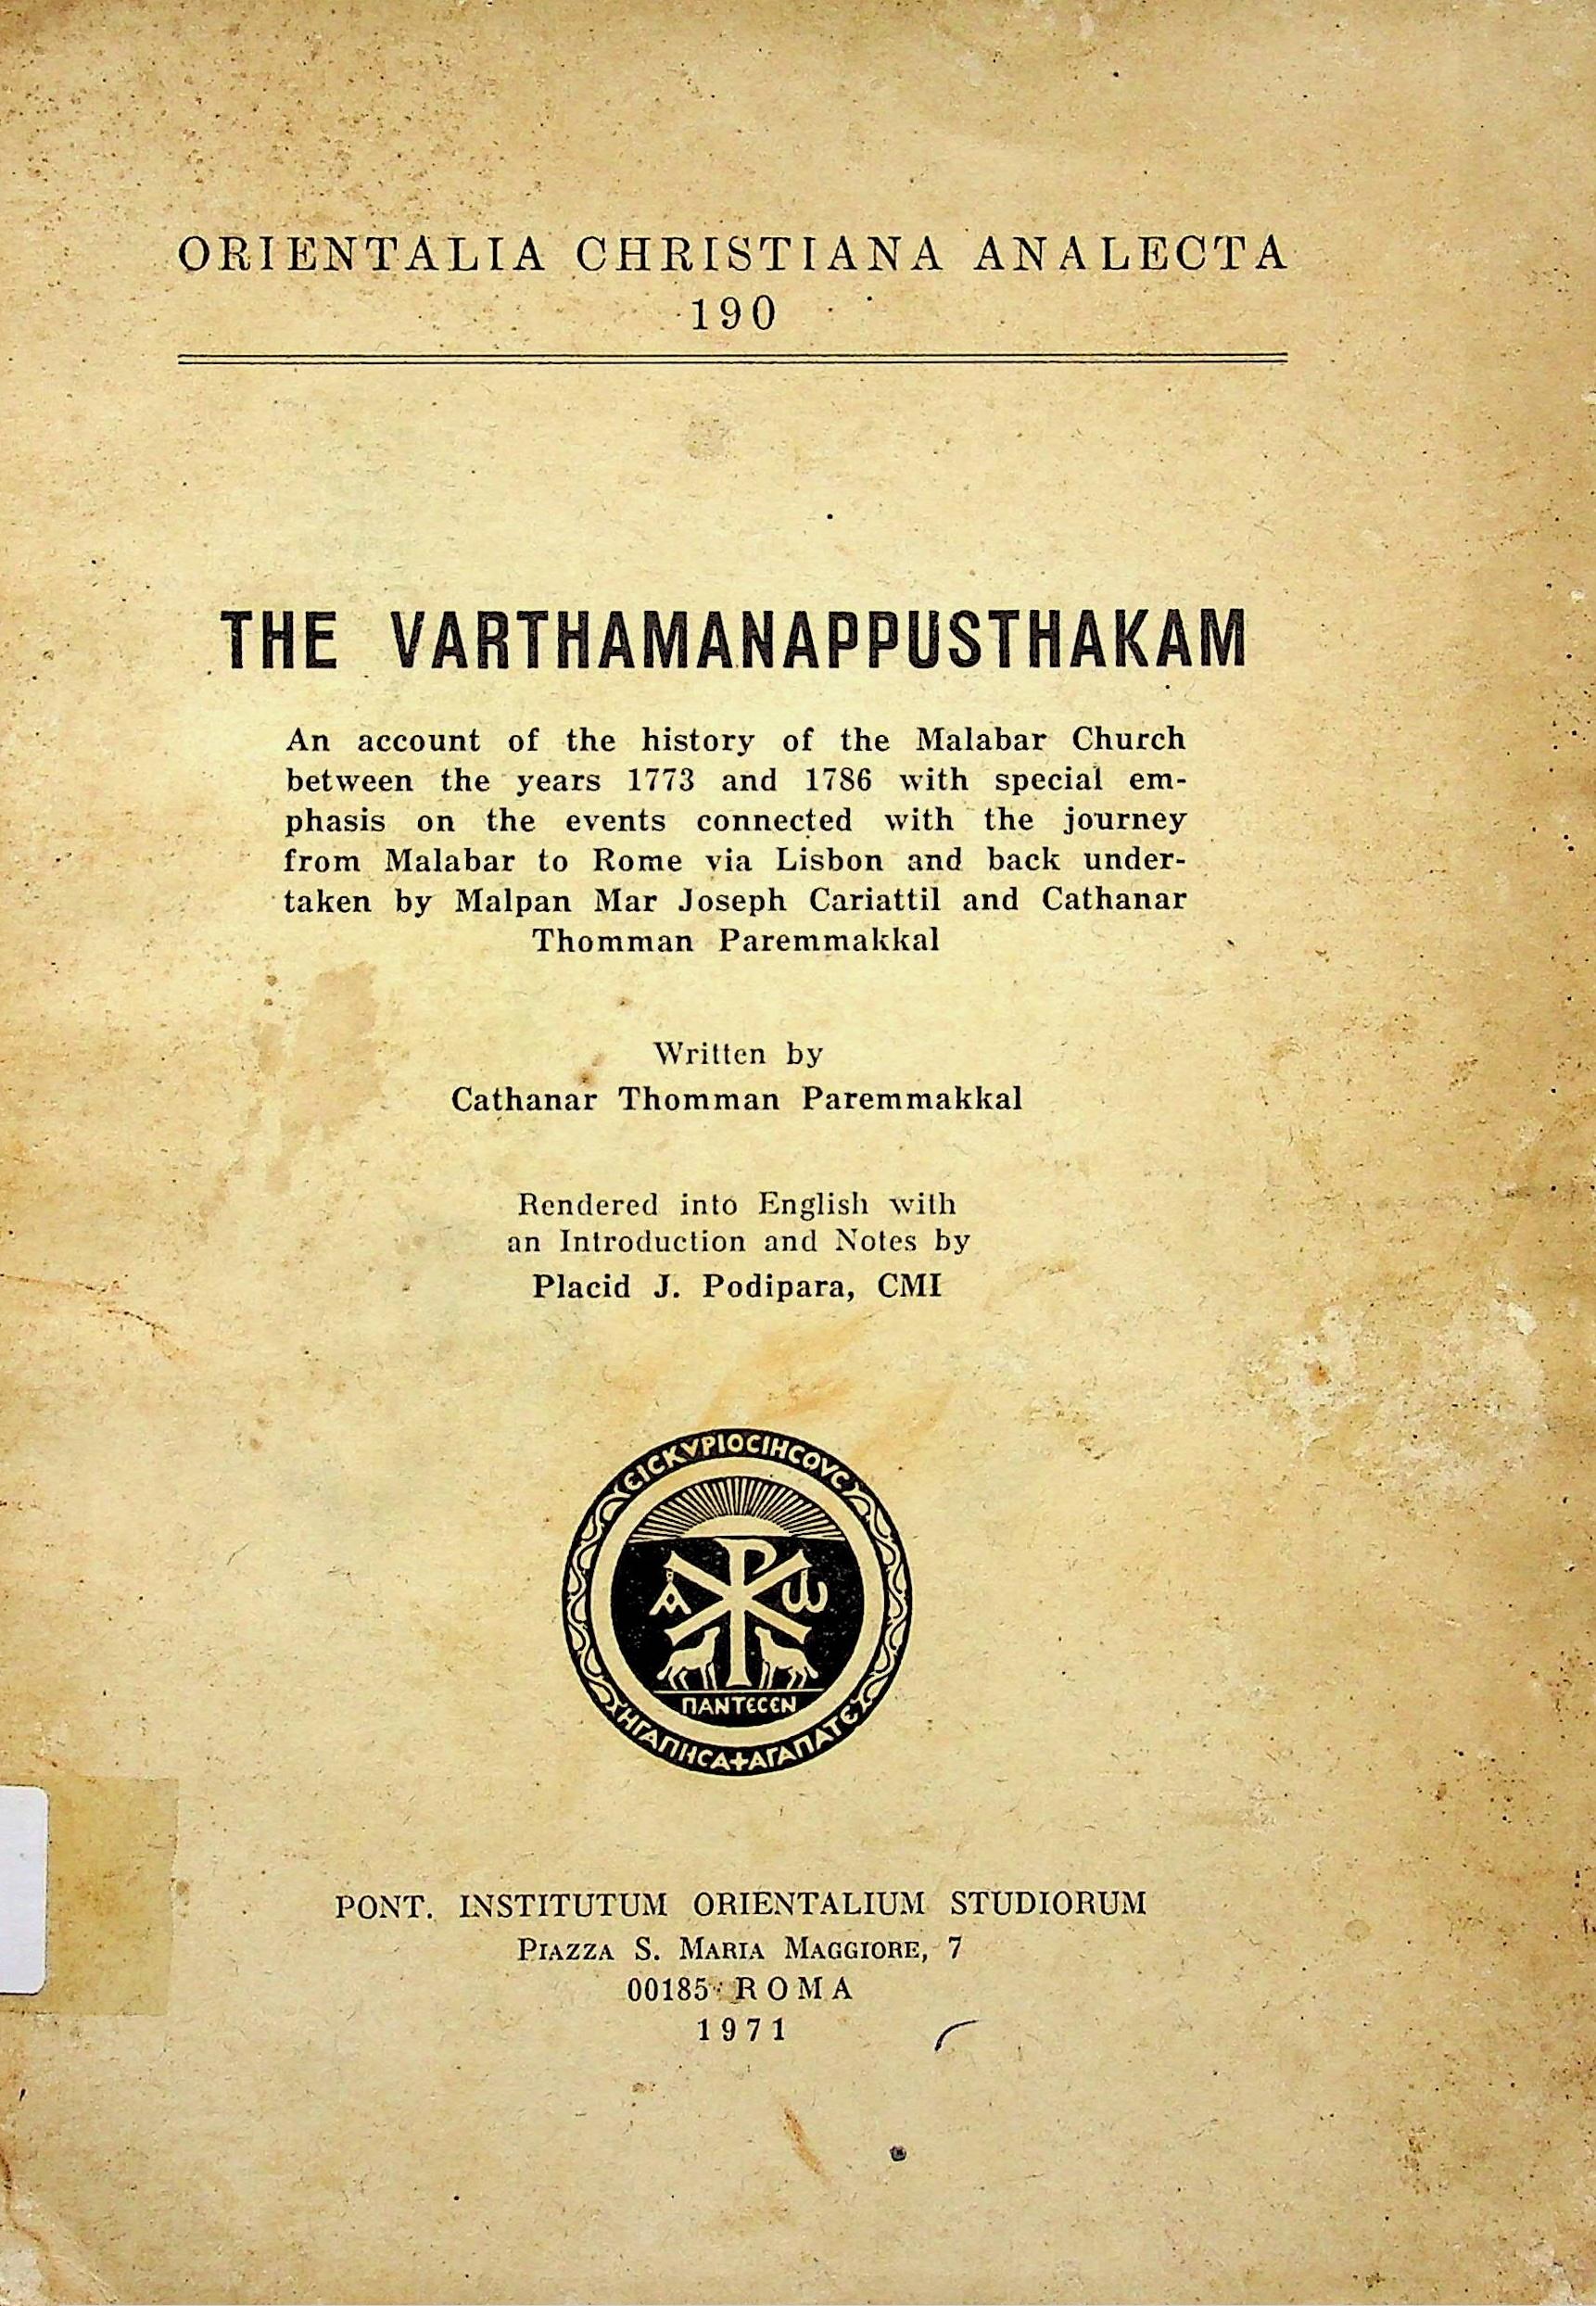 The Varthamanappushatham